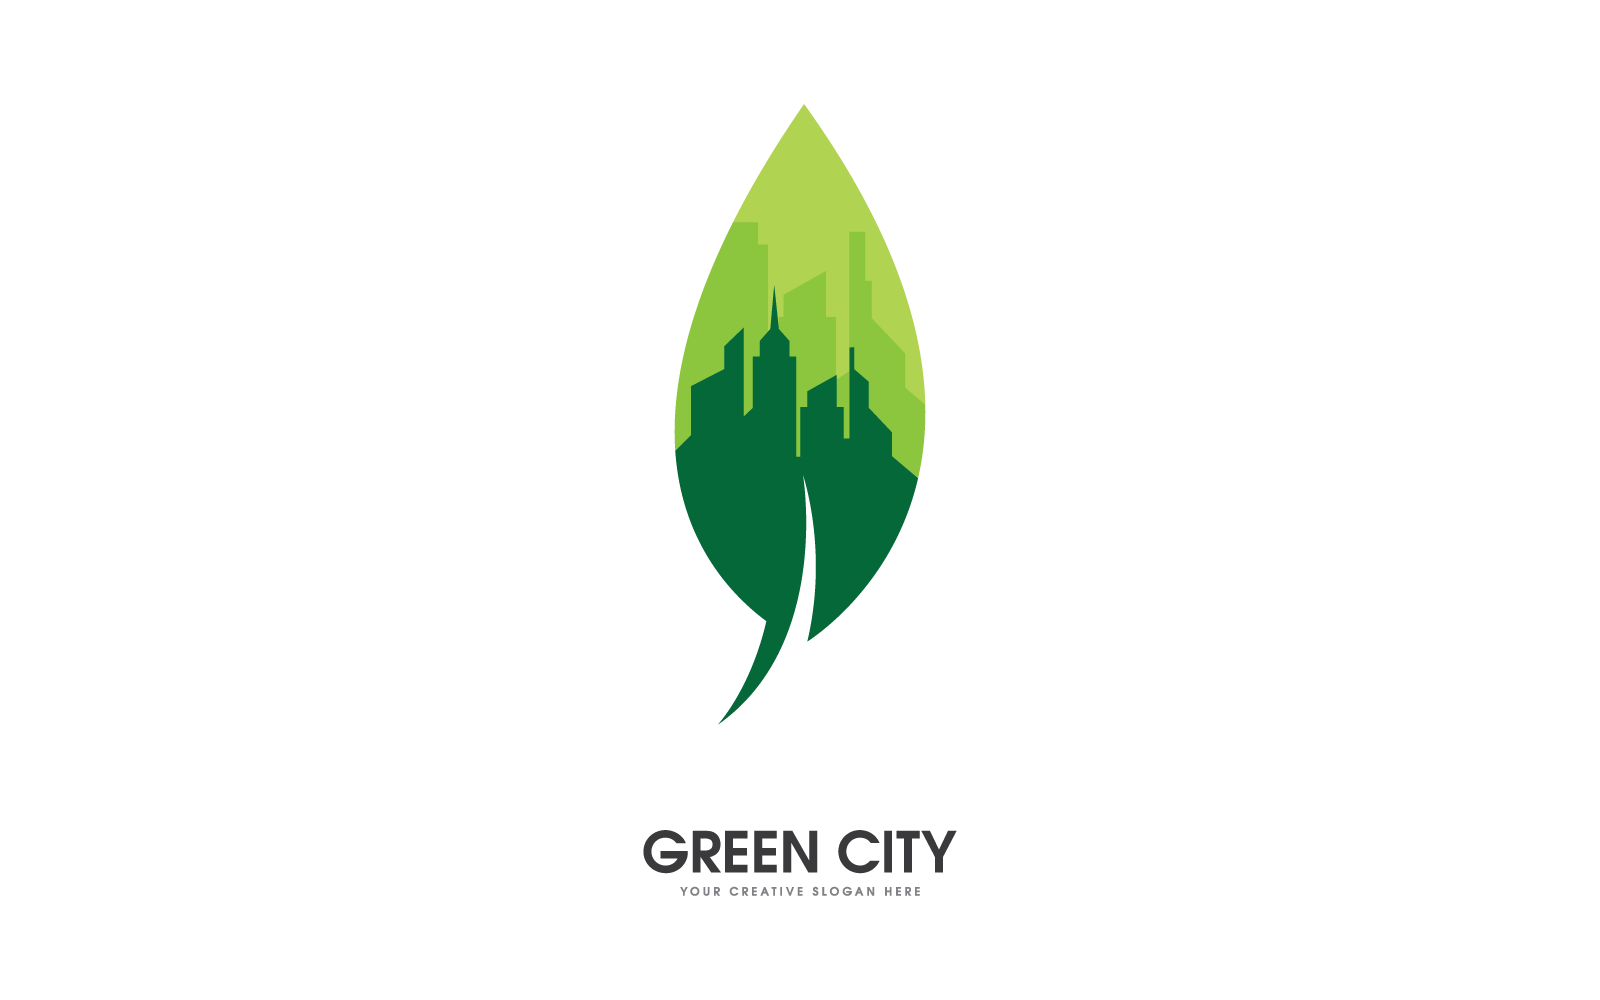 Design vetorial de ilustração do logotipo da cidade verde